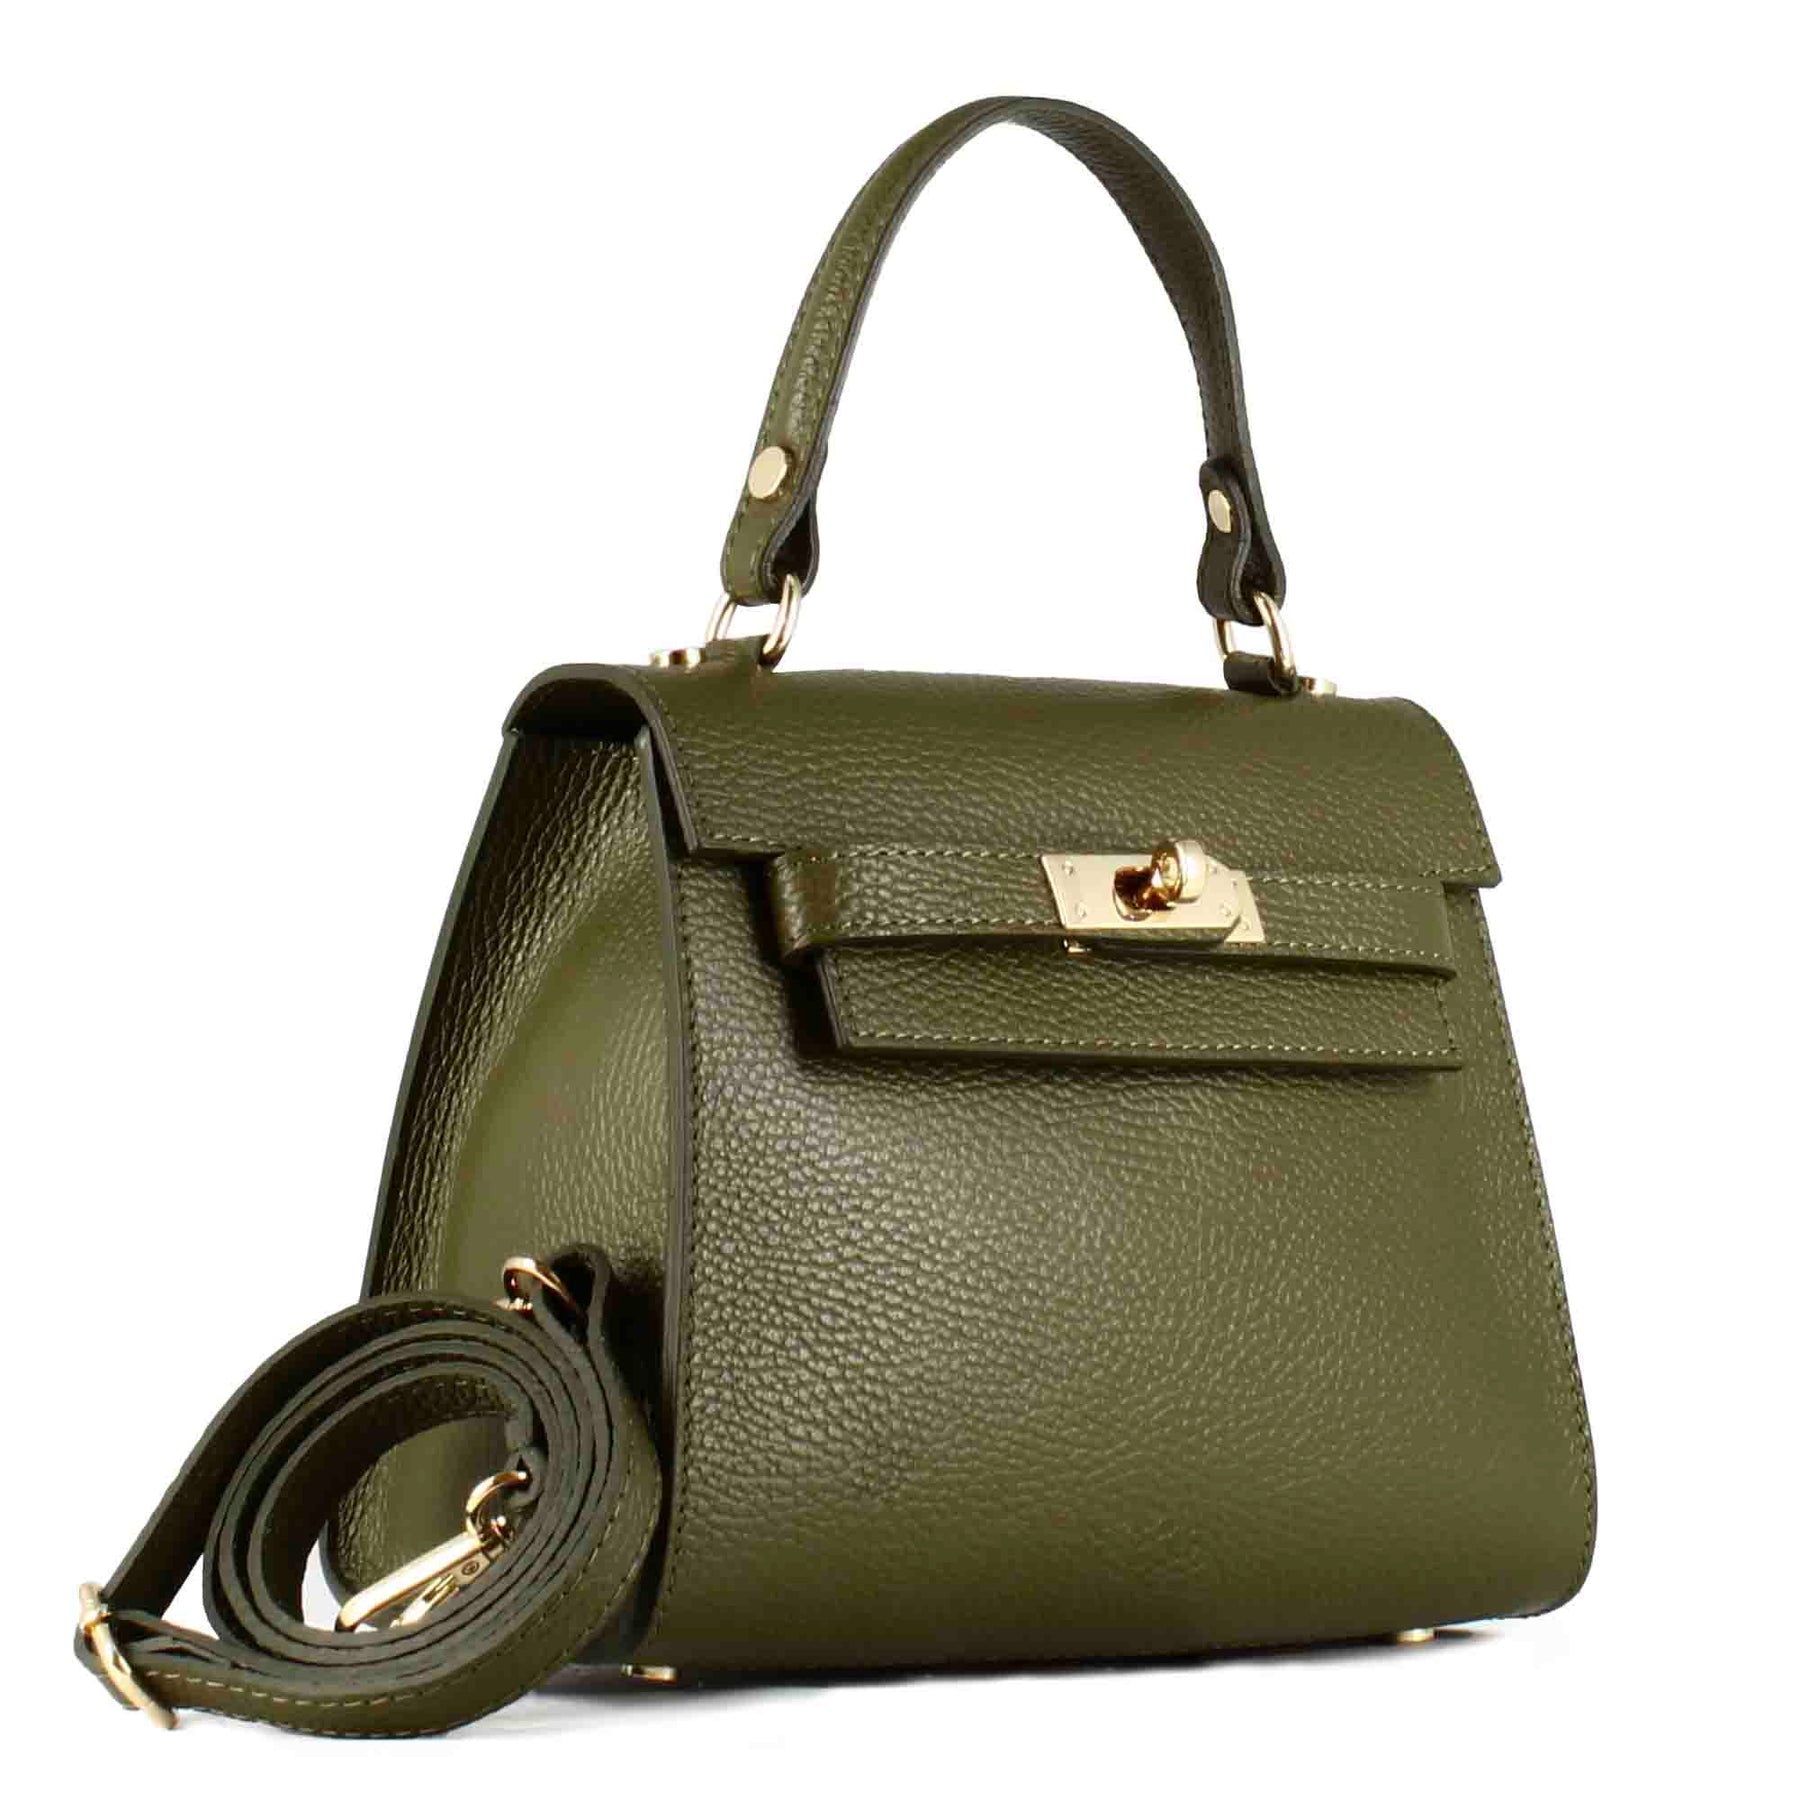 Lady K leather handbag with removable green shoulder strap